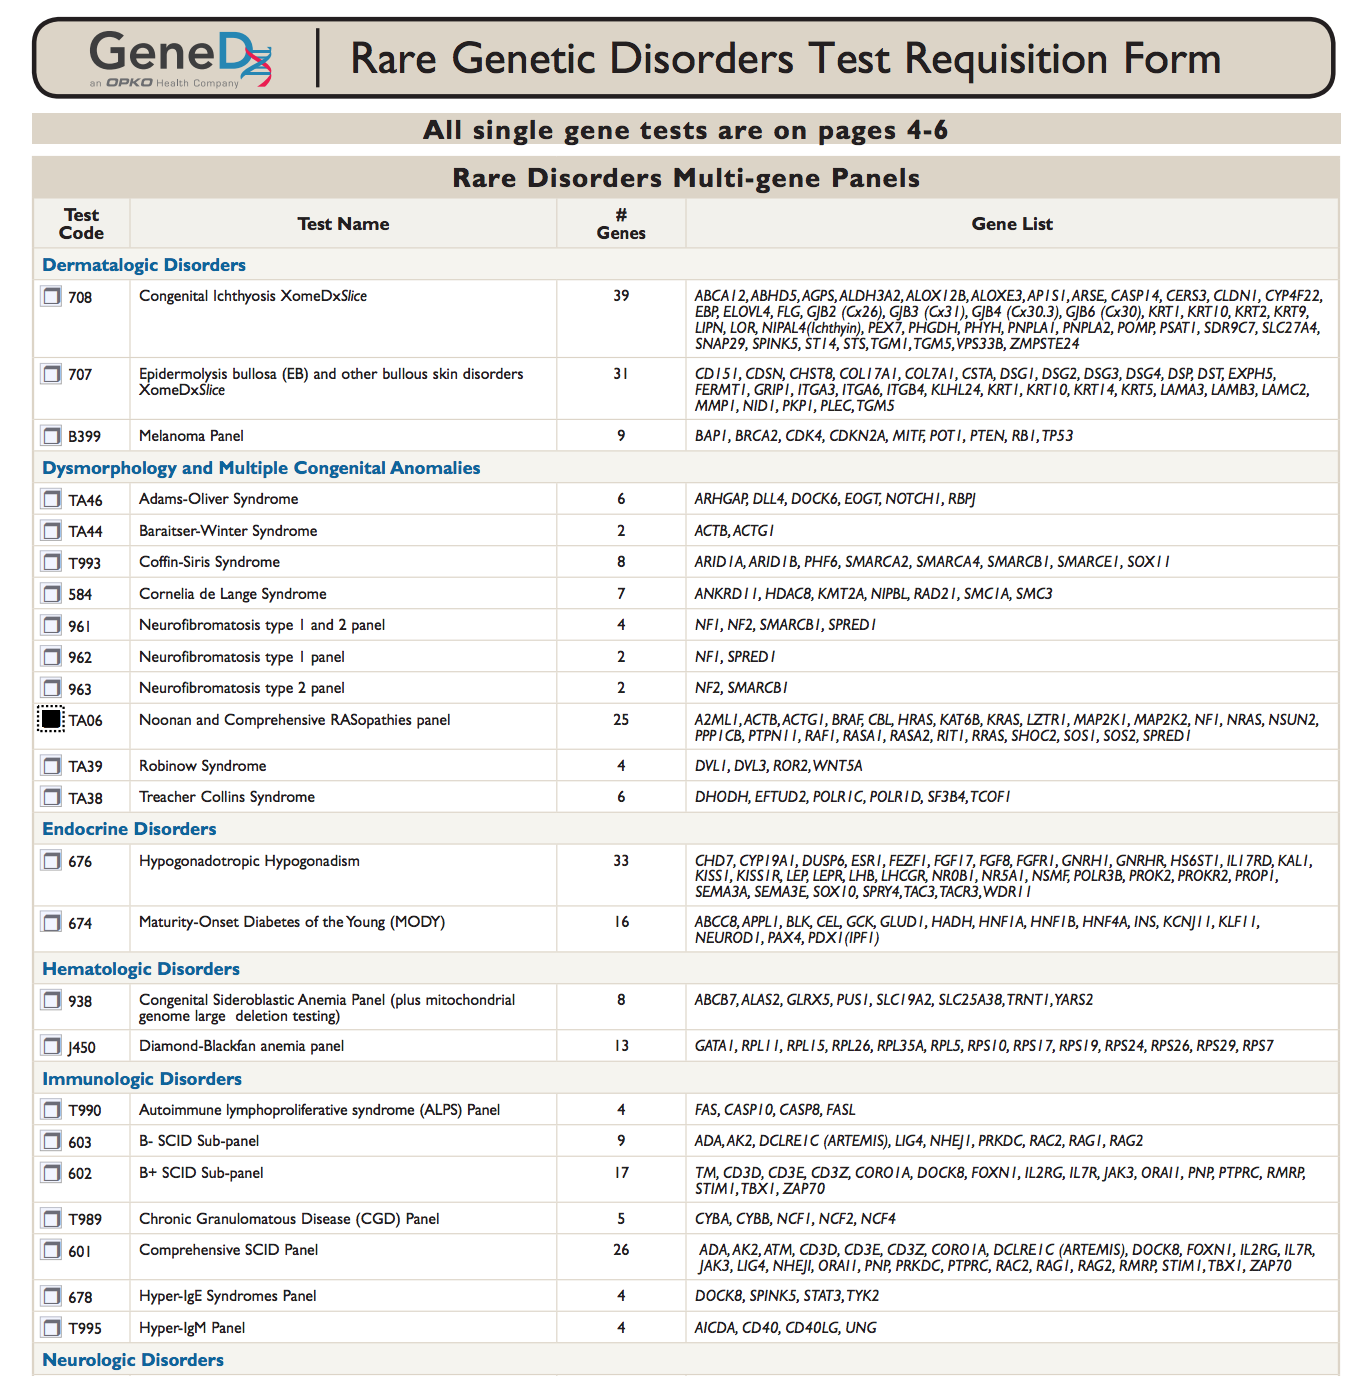 Tabla con listas con pruebas, sus códigos, nombres, número de genes donde se encuentra la condición probada y la lista de esos genes